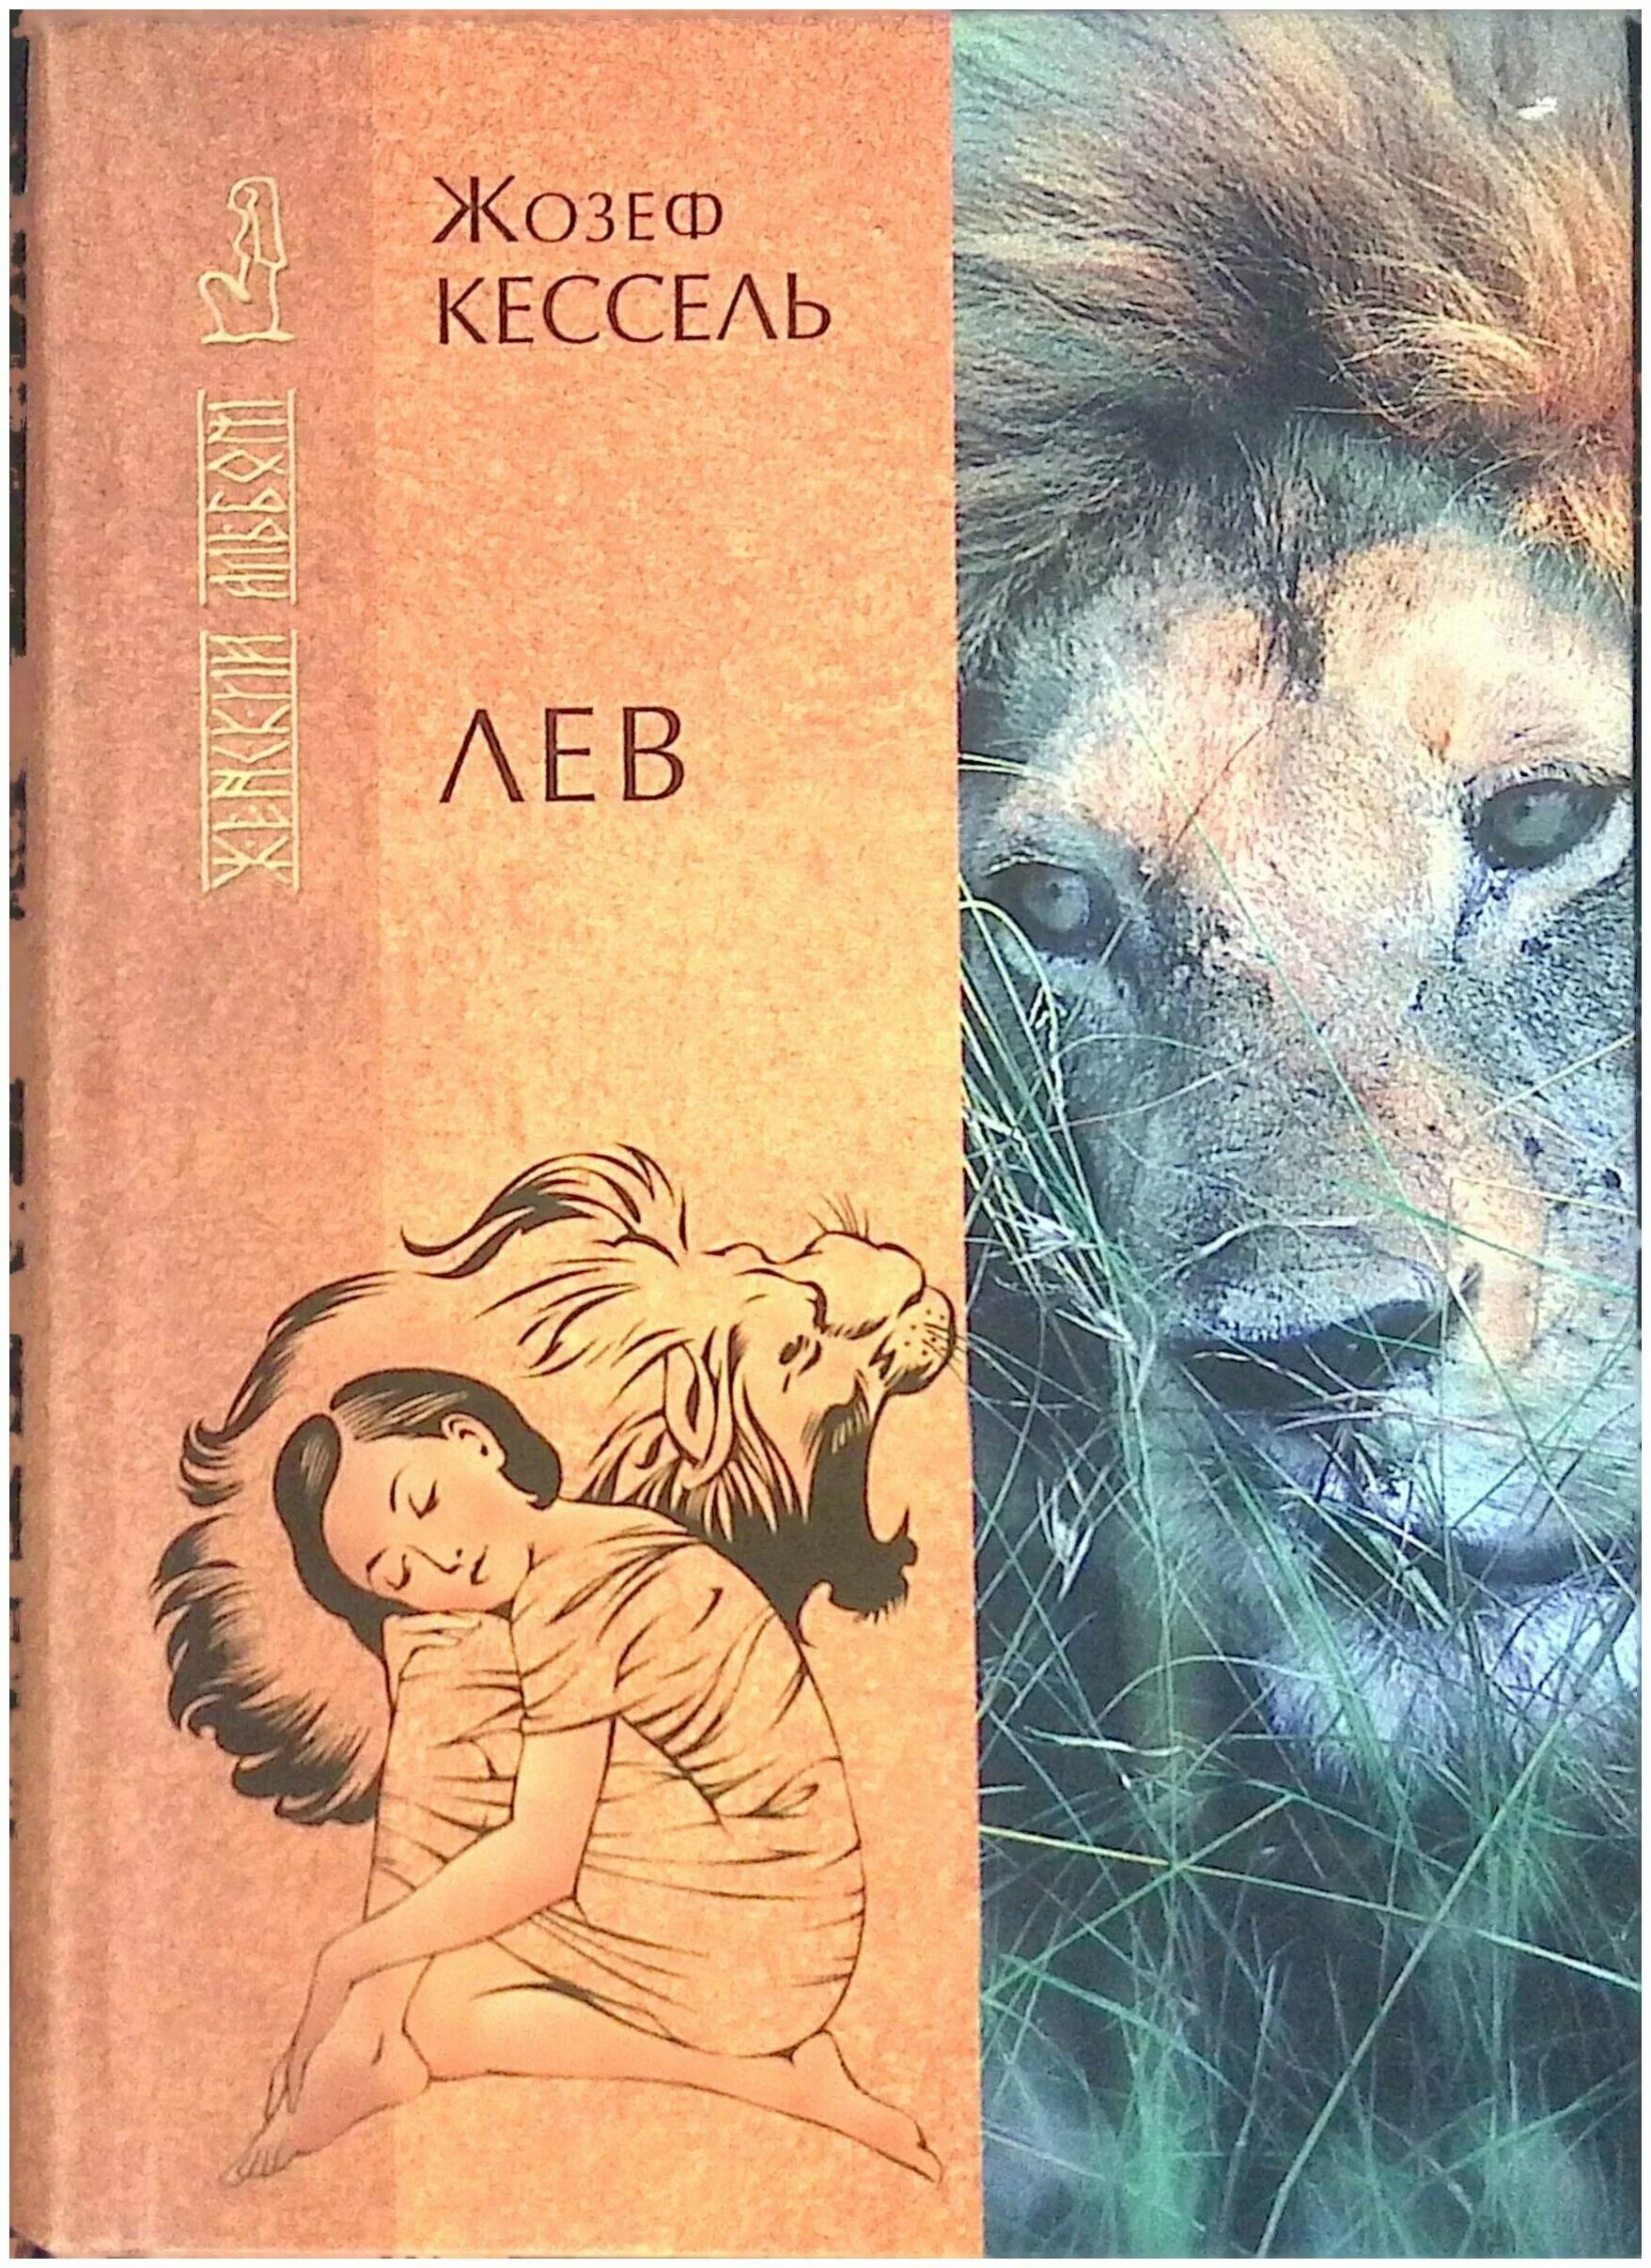 Книга со львом. Кессель Жозеф Лев книга. Книги о львах. Обложка Лев. Книга со львом на обложке.